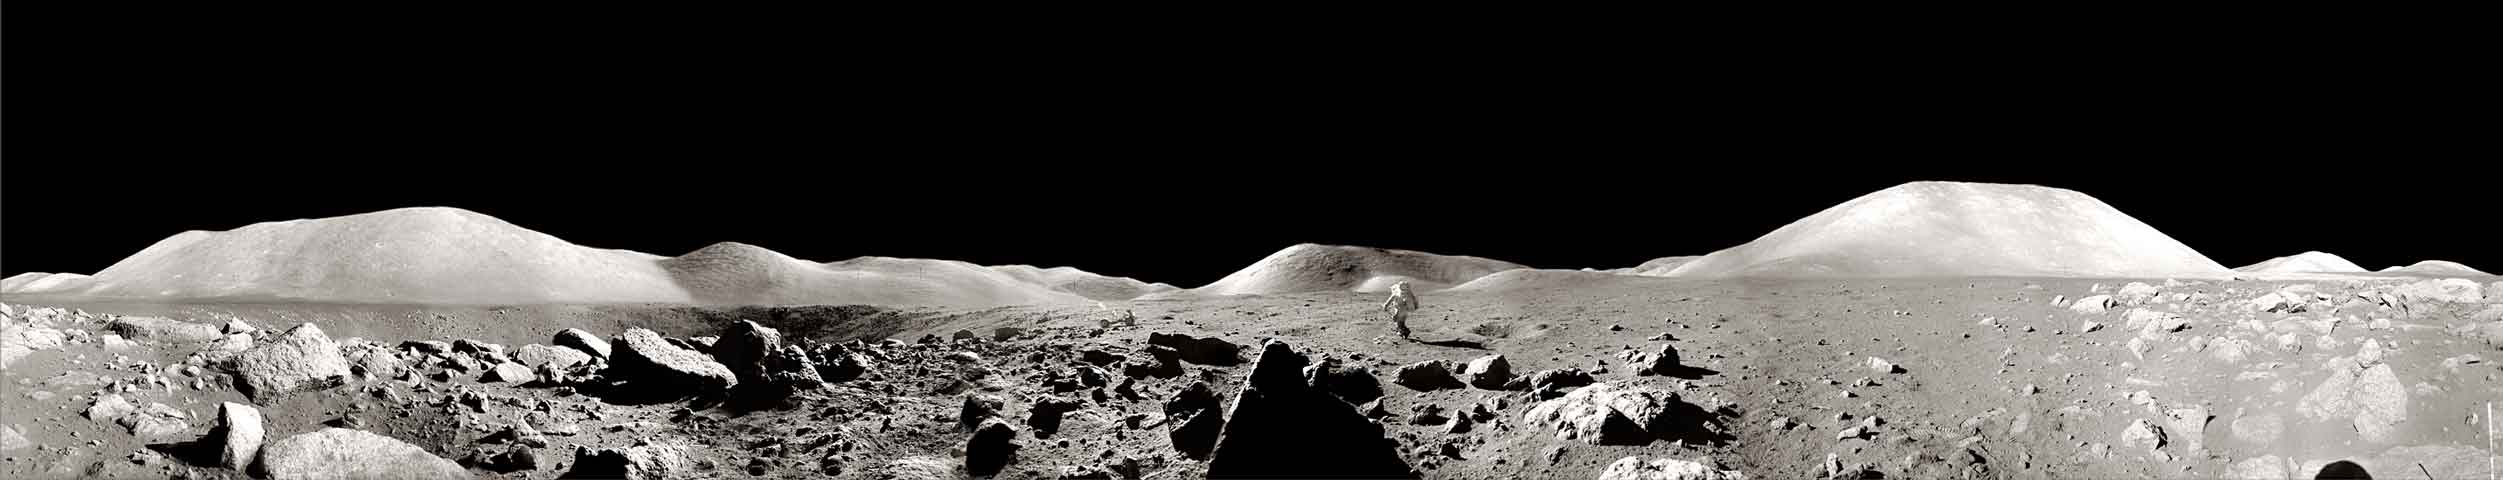 Apolo 17 Panorama de astronautas Atletismo